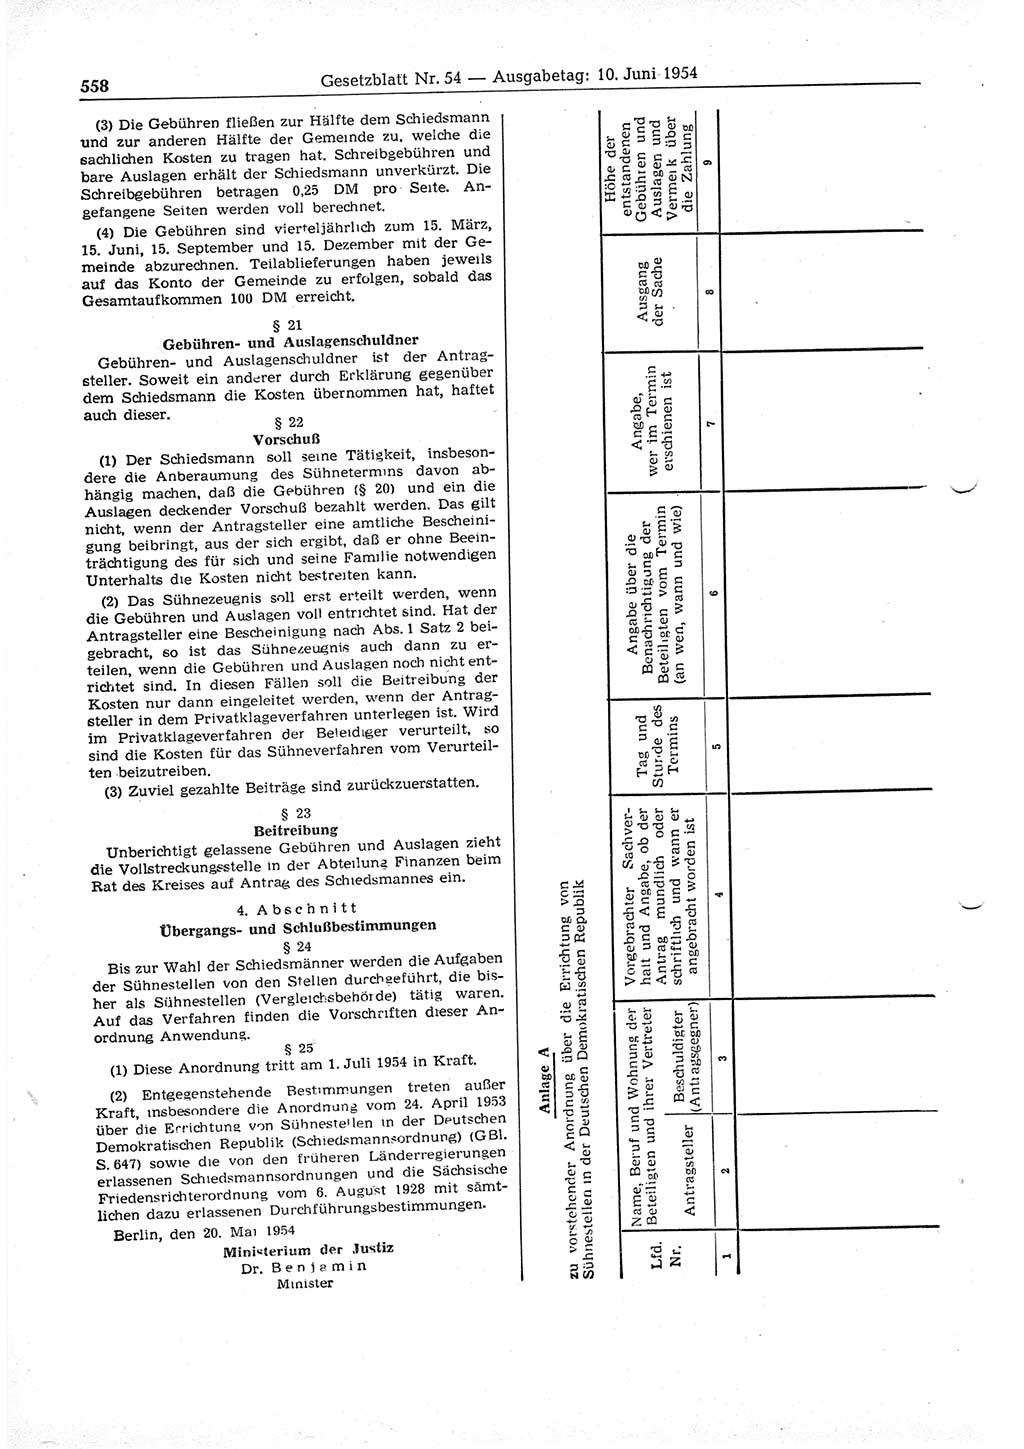 Gesetzblatt (GBl.) der Deutschen Demokratischen Republik (DDR) 1954, Seite 558 (GBl. DDR 1954, S. 558)